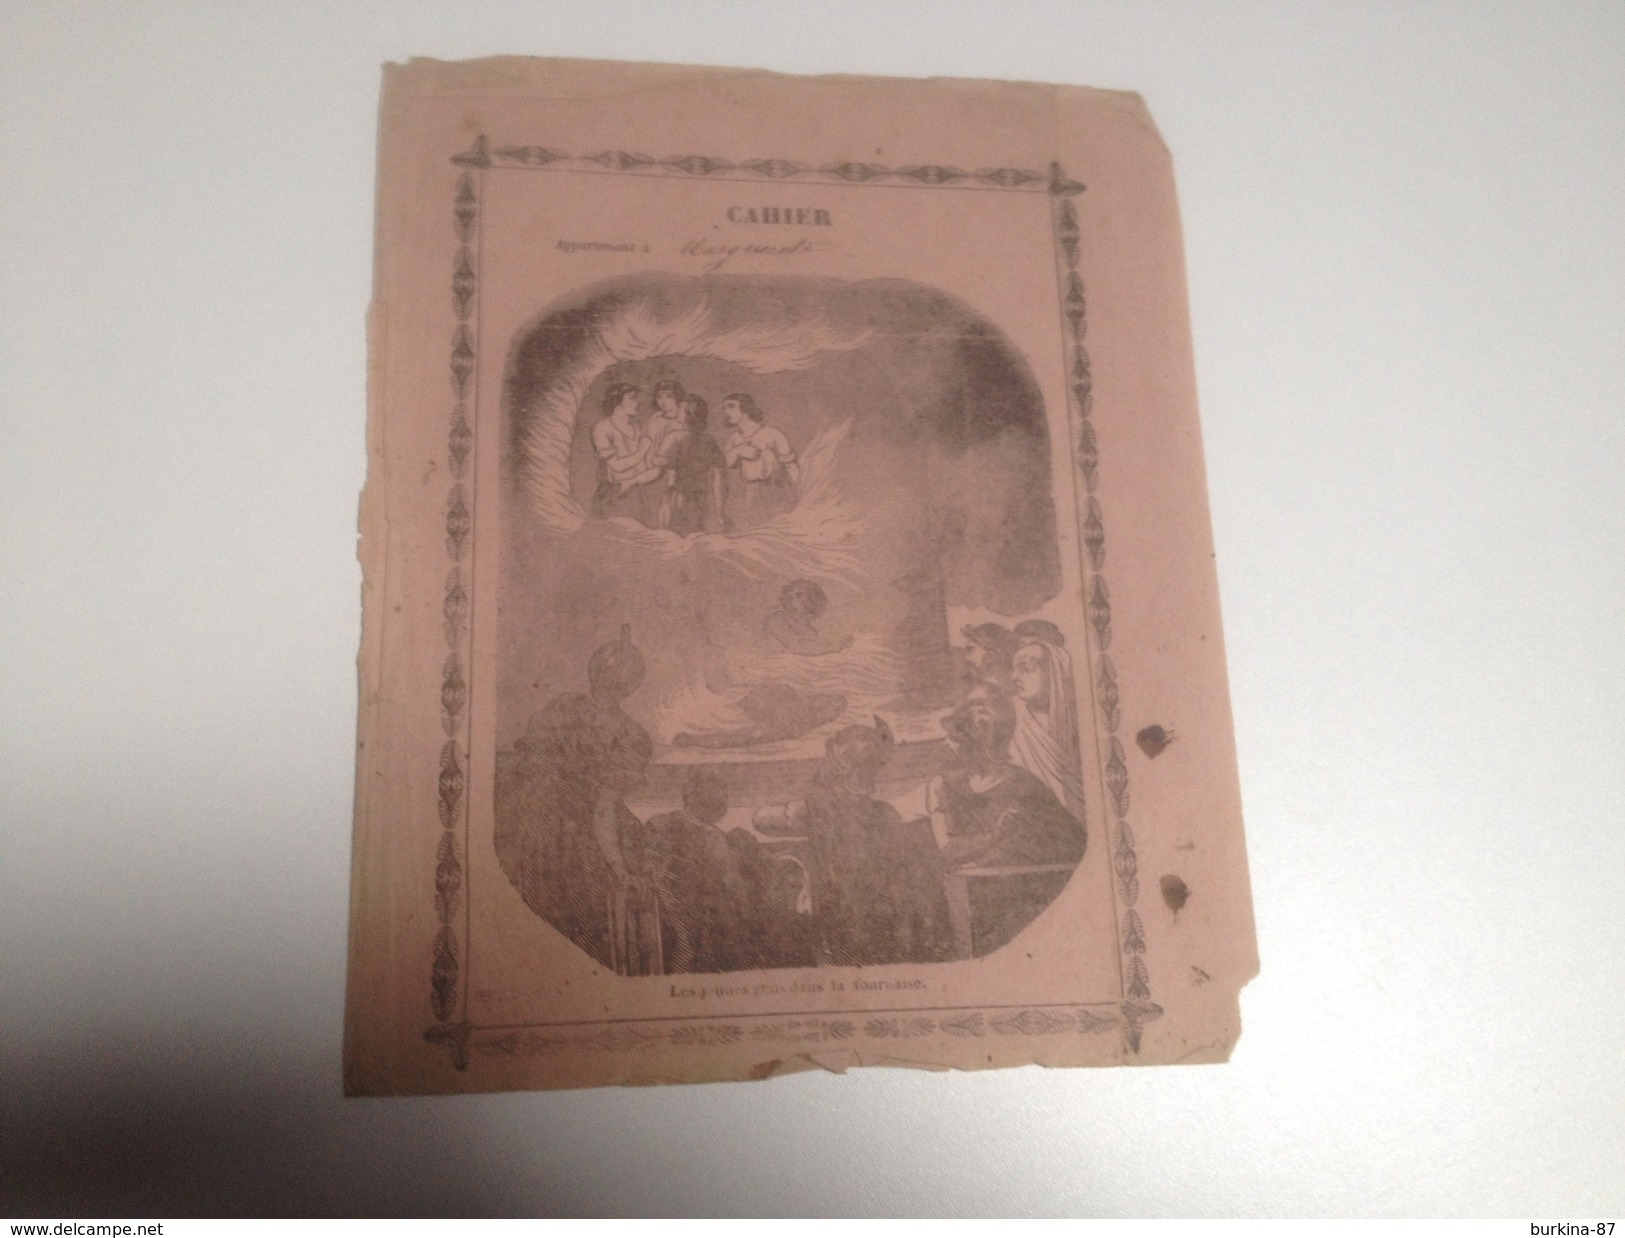 LOT de 5 couvertures de cahiers anciens, vers 1900 et avant, lot N°2